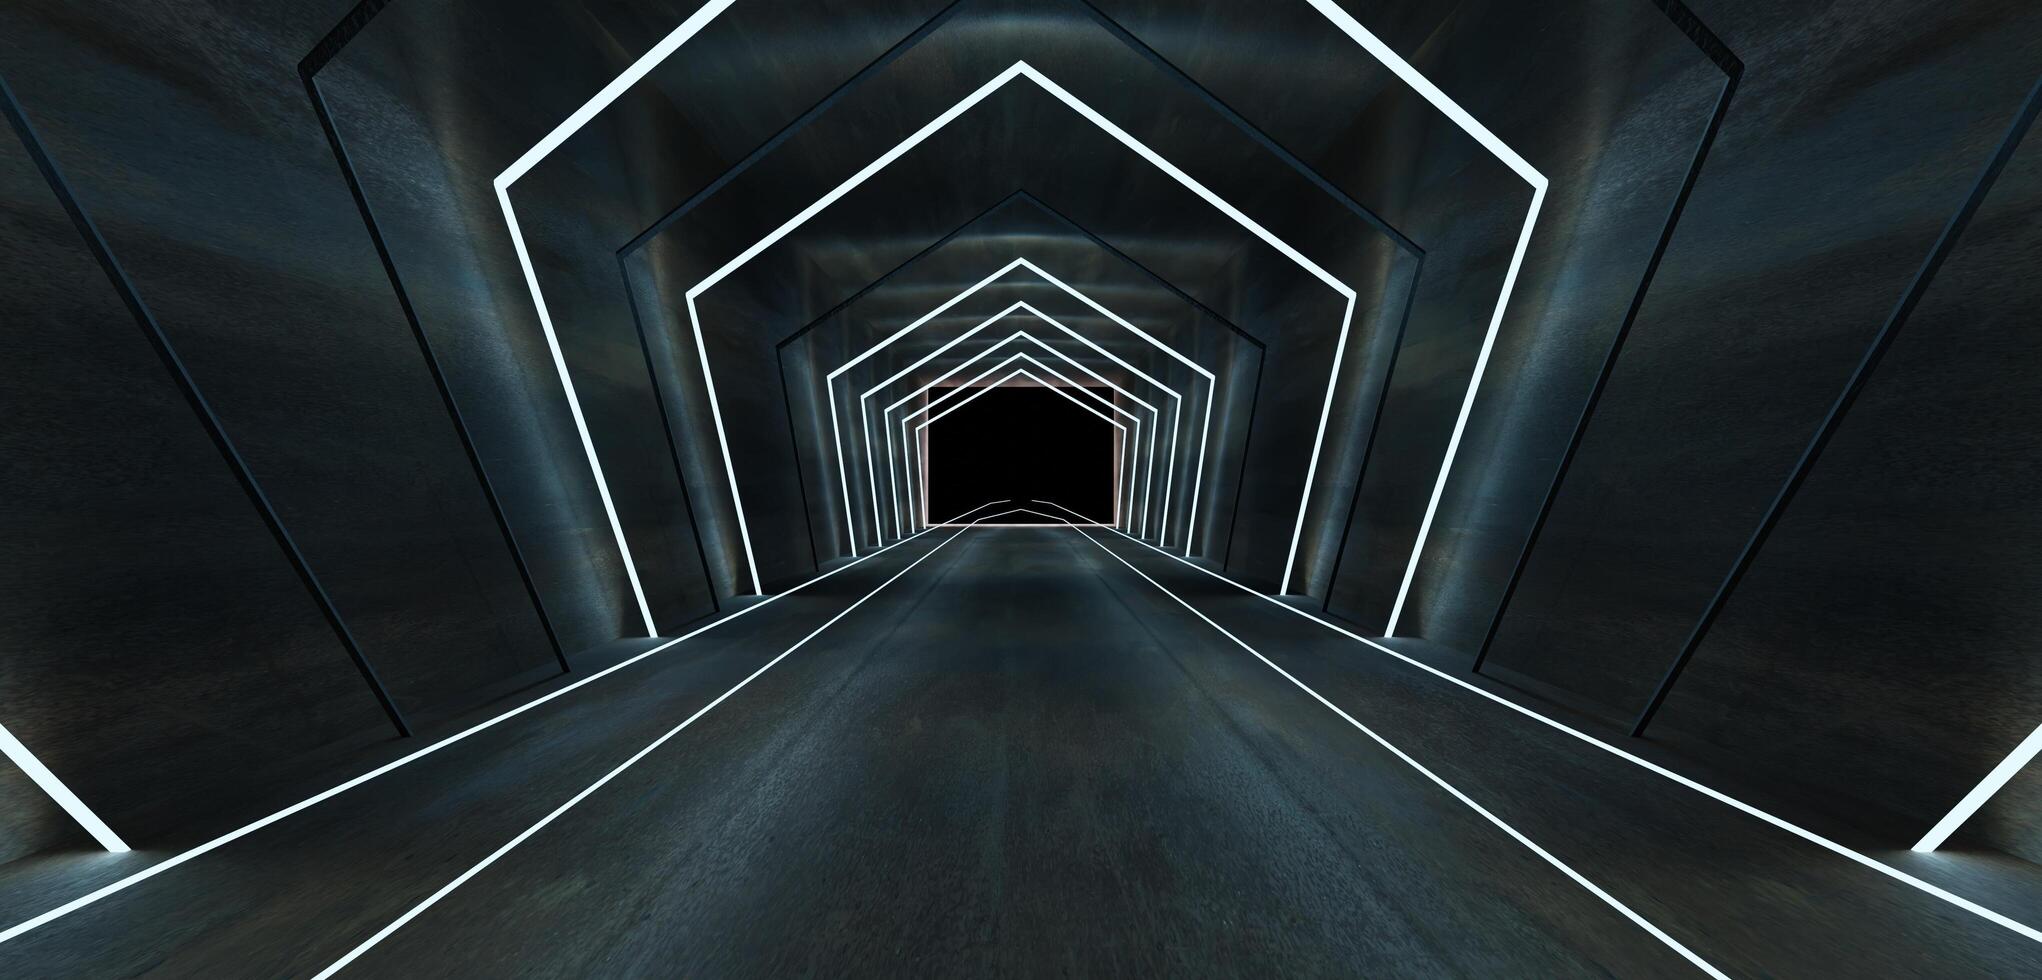 ljus tunnel och laser stråle modern rör 3d illustration foto